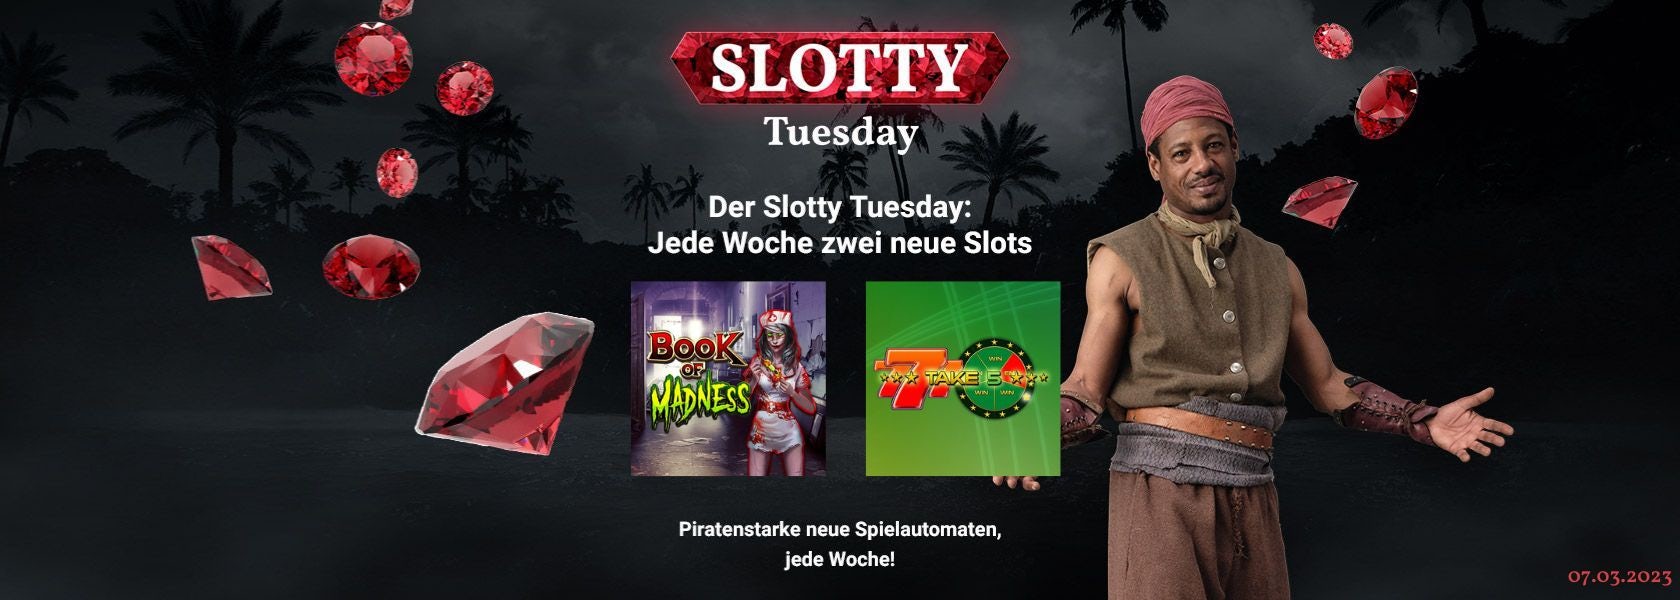 JPI-Header-Slotty-Tuesday-0703